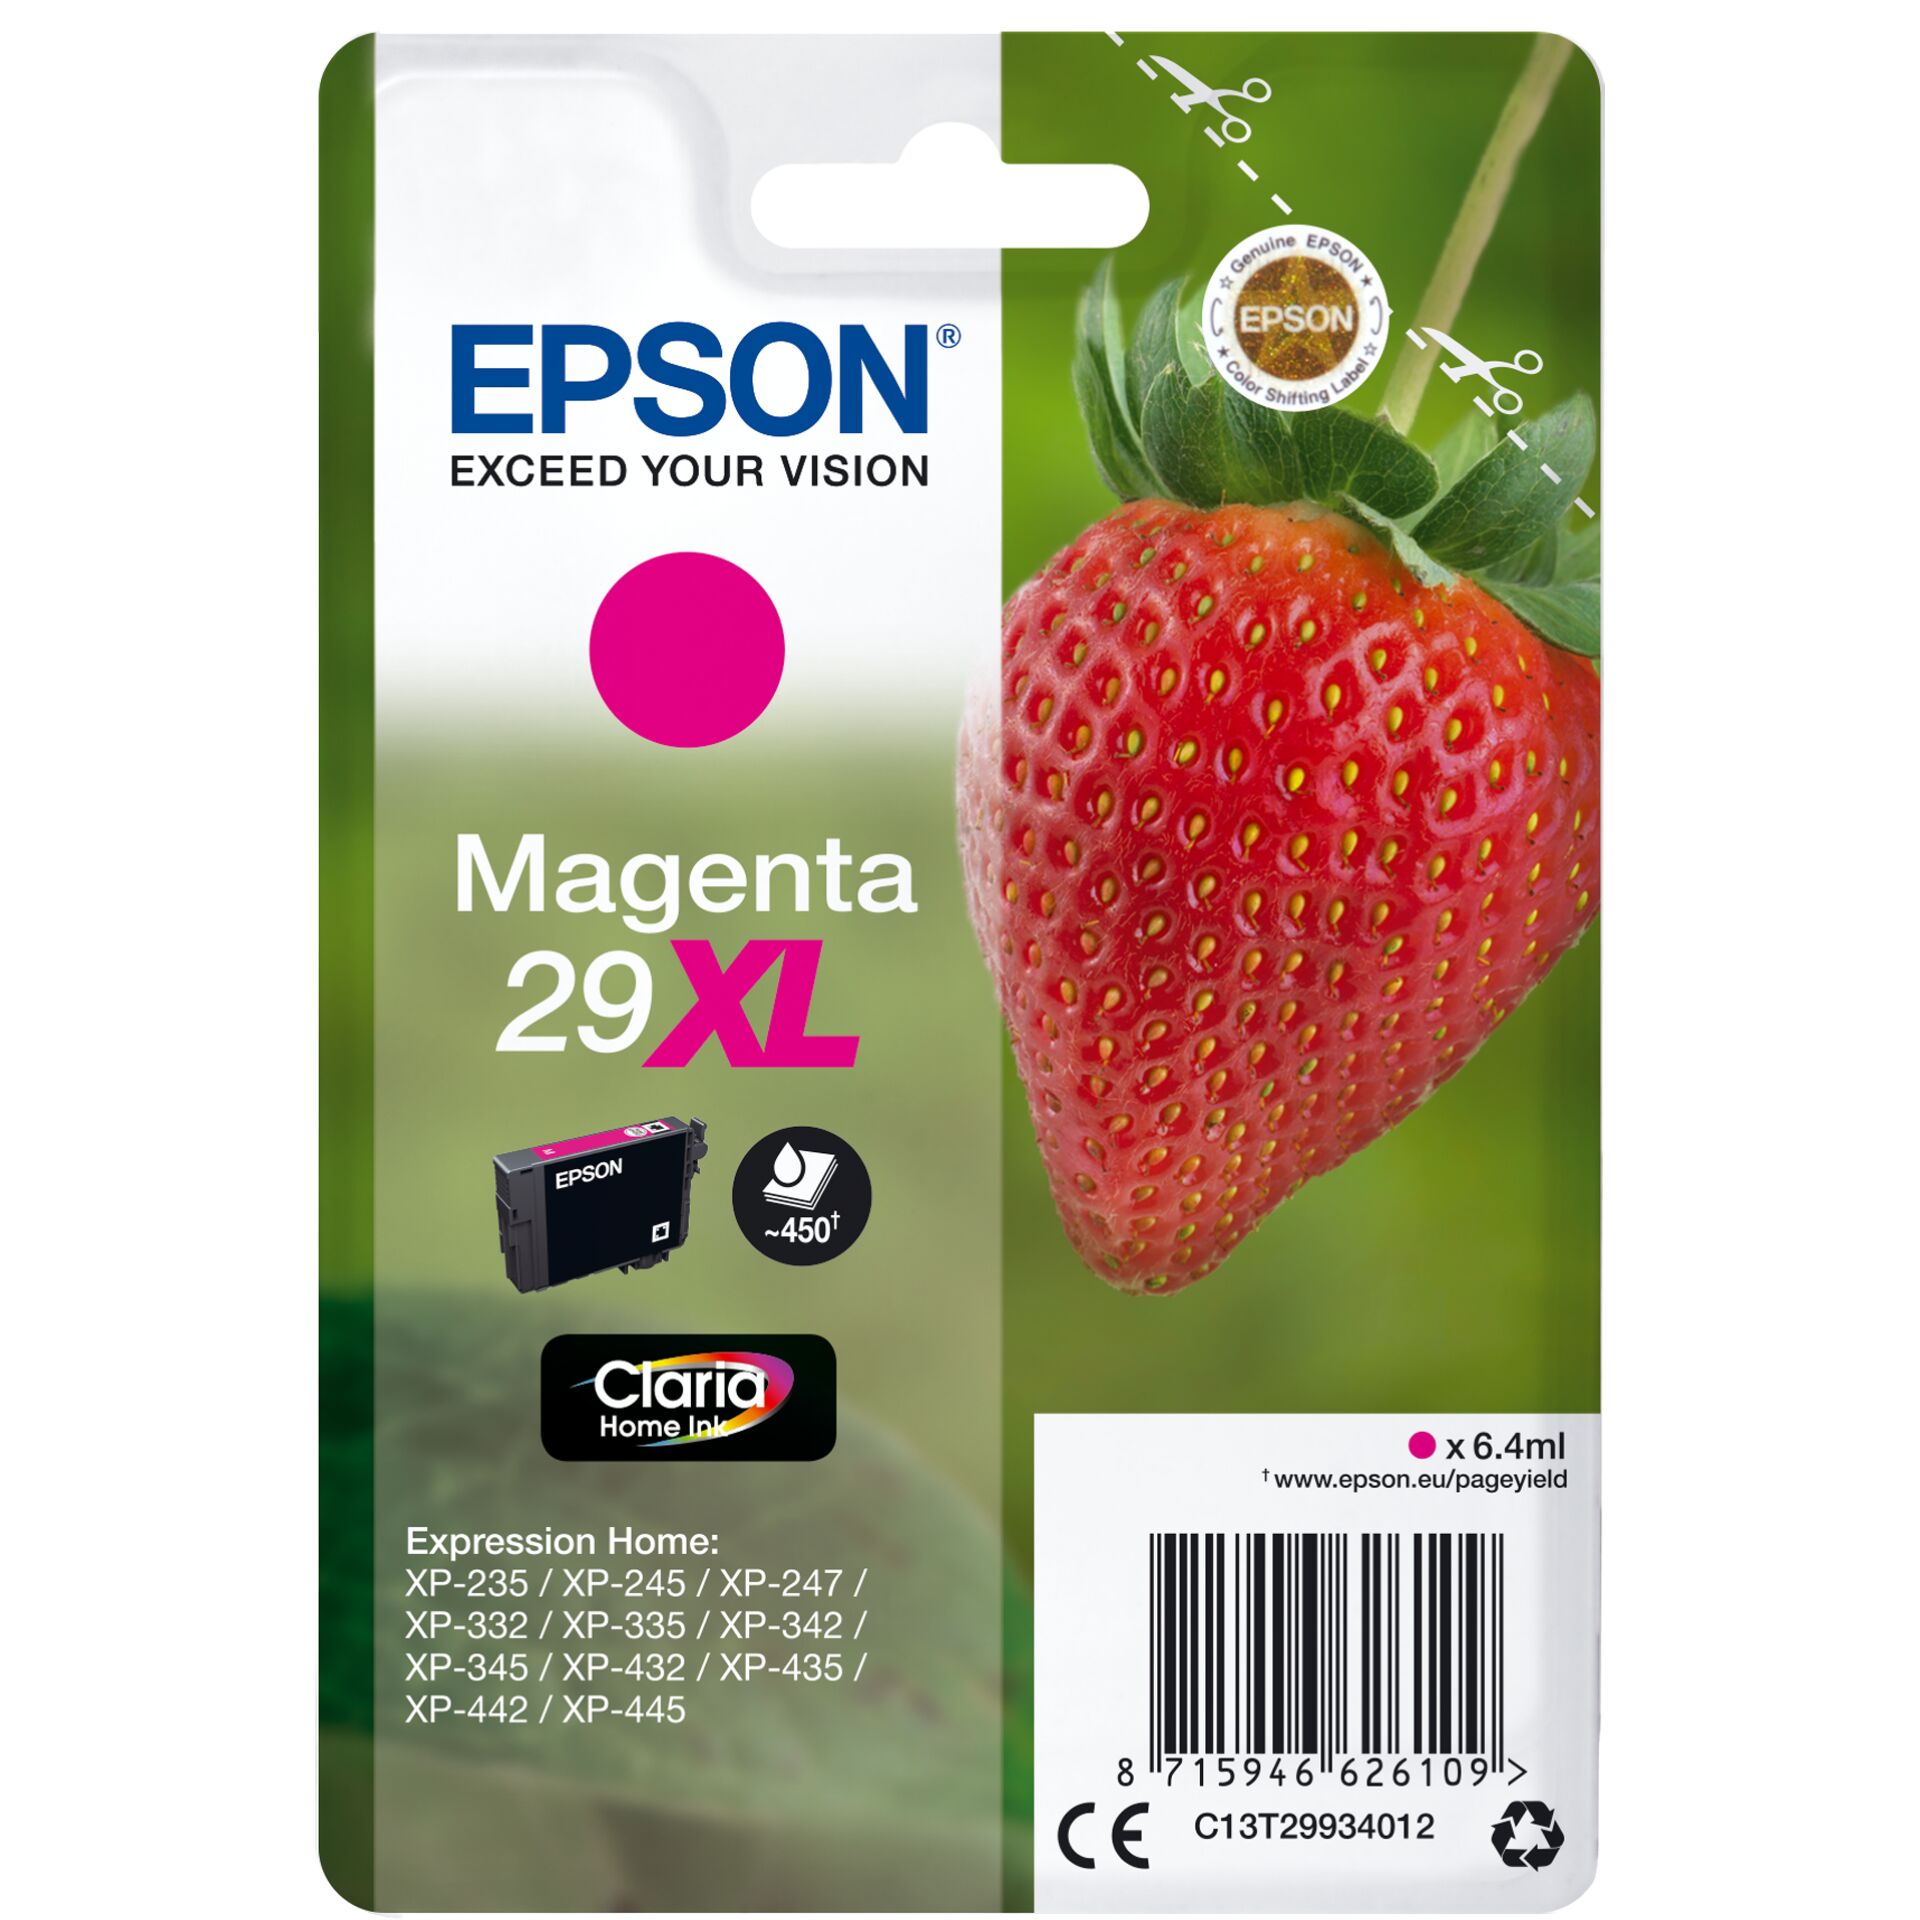 Epson Tinte 29XL magenta, 6.4ml 